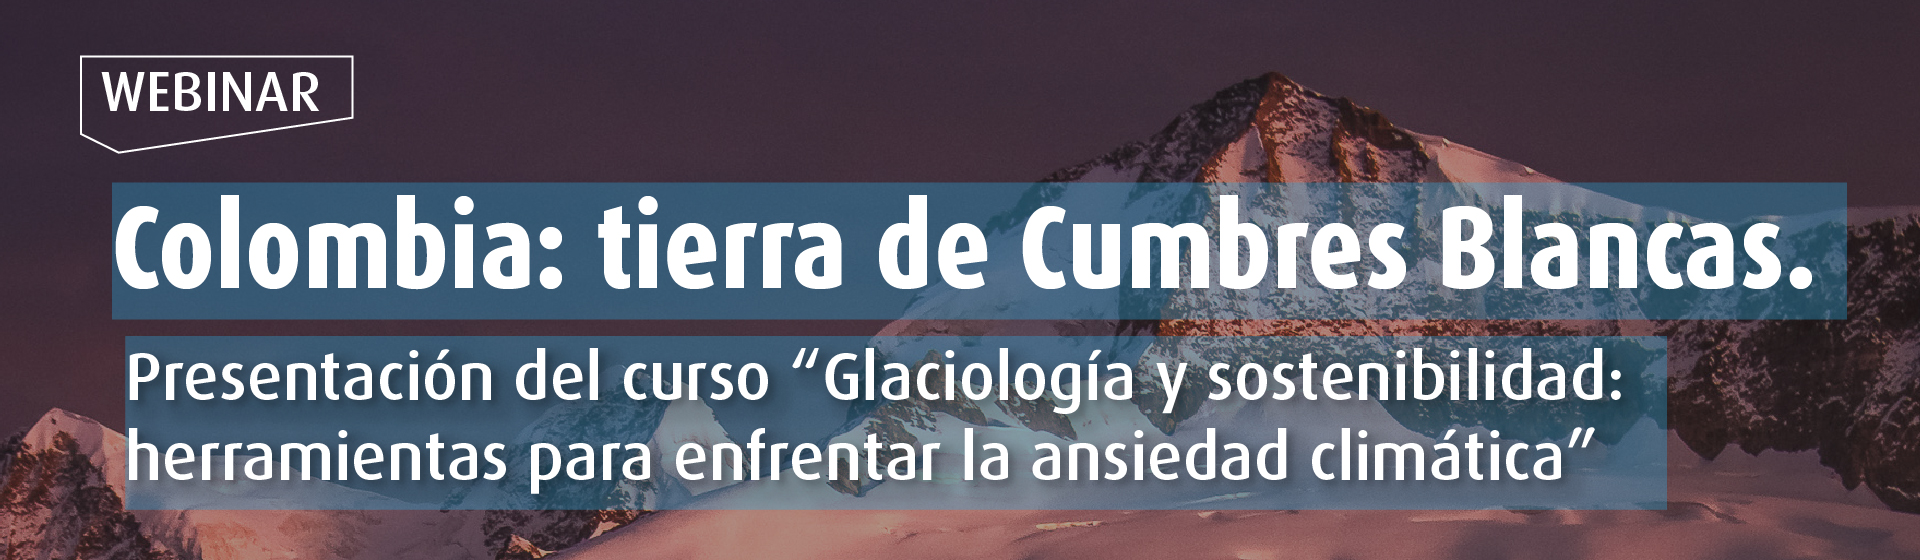 Colombia: tierra de cumbres blancas. Presentación del curso “Glaciología y sostenibilidad: herramientas para enfrentar la ansiedad climática”- Cider | Uniandes